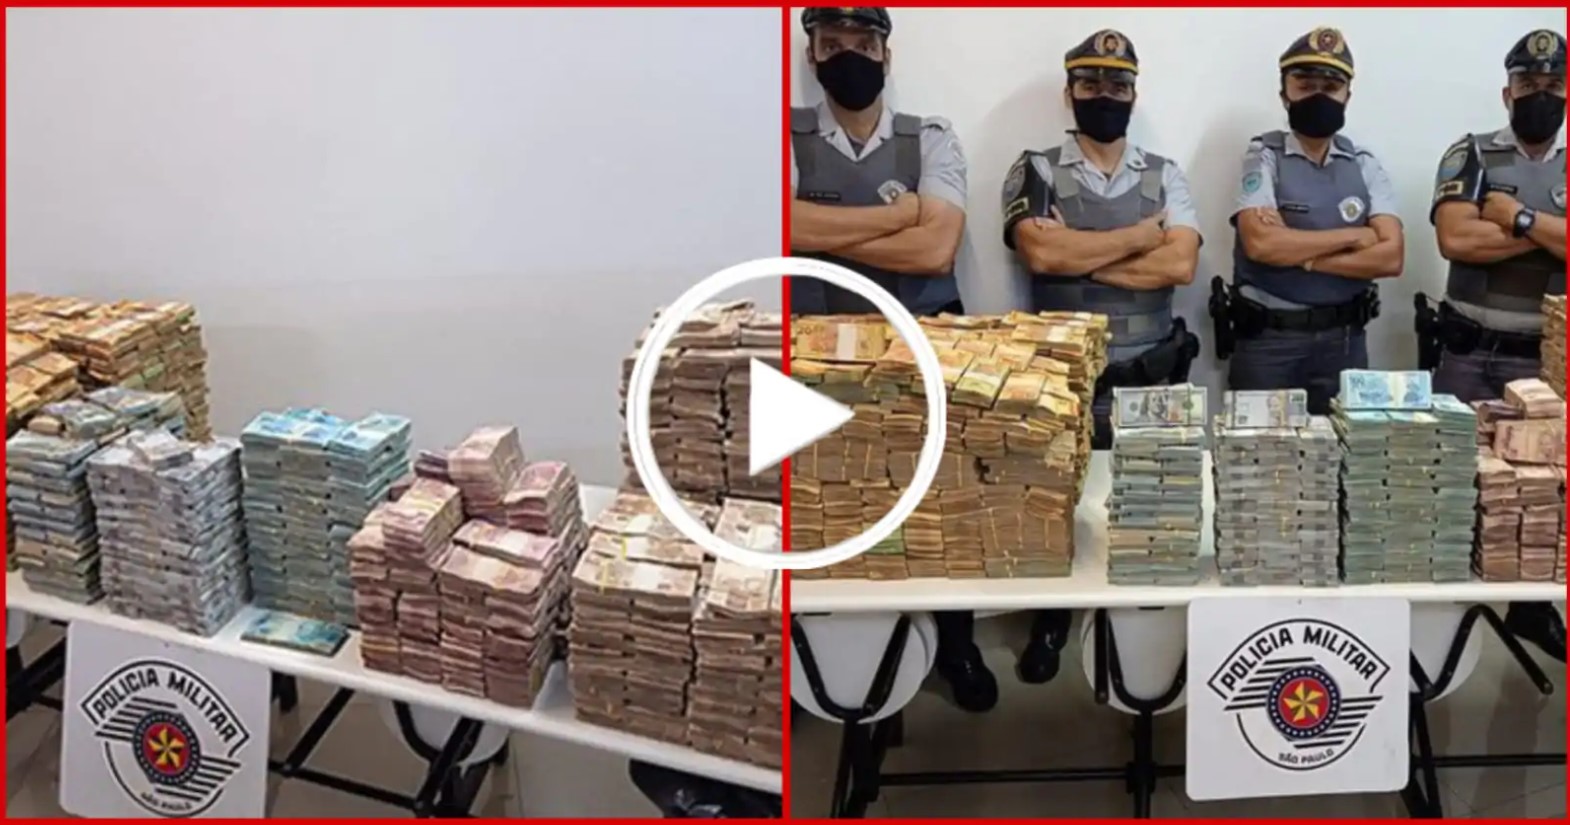 A polícia Militar Rodoviária apreendeu cerca de R$ 11 milhões em dinheiro vivo. O dinheiro estava em uma carreta. FOTO: internet.